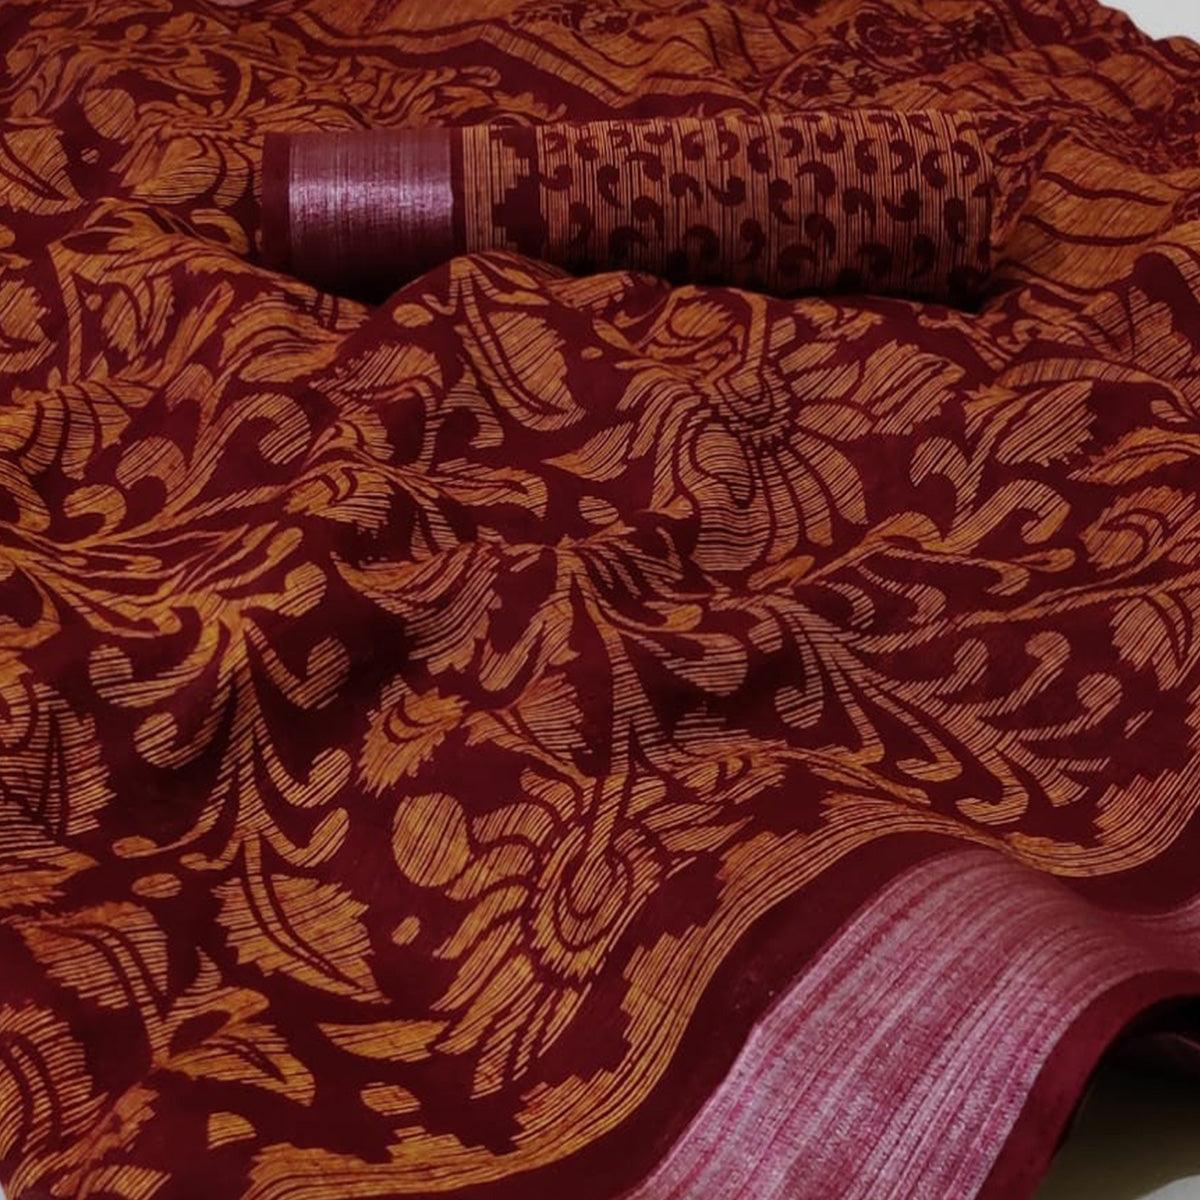 Maroon Casual Wear Mill Printed Linen Cotton Saree With Silver Zari Border - Peachmode